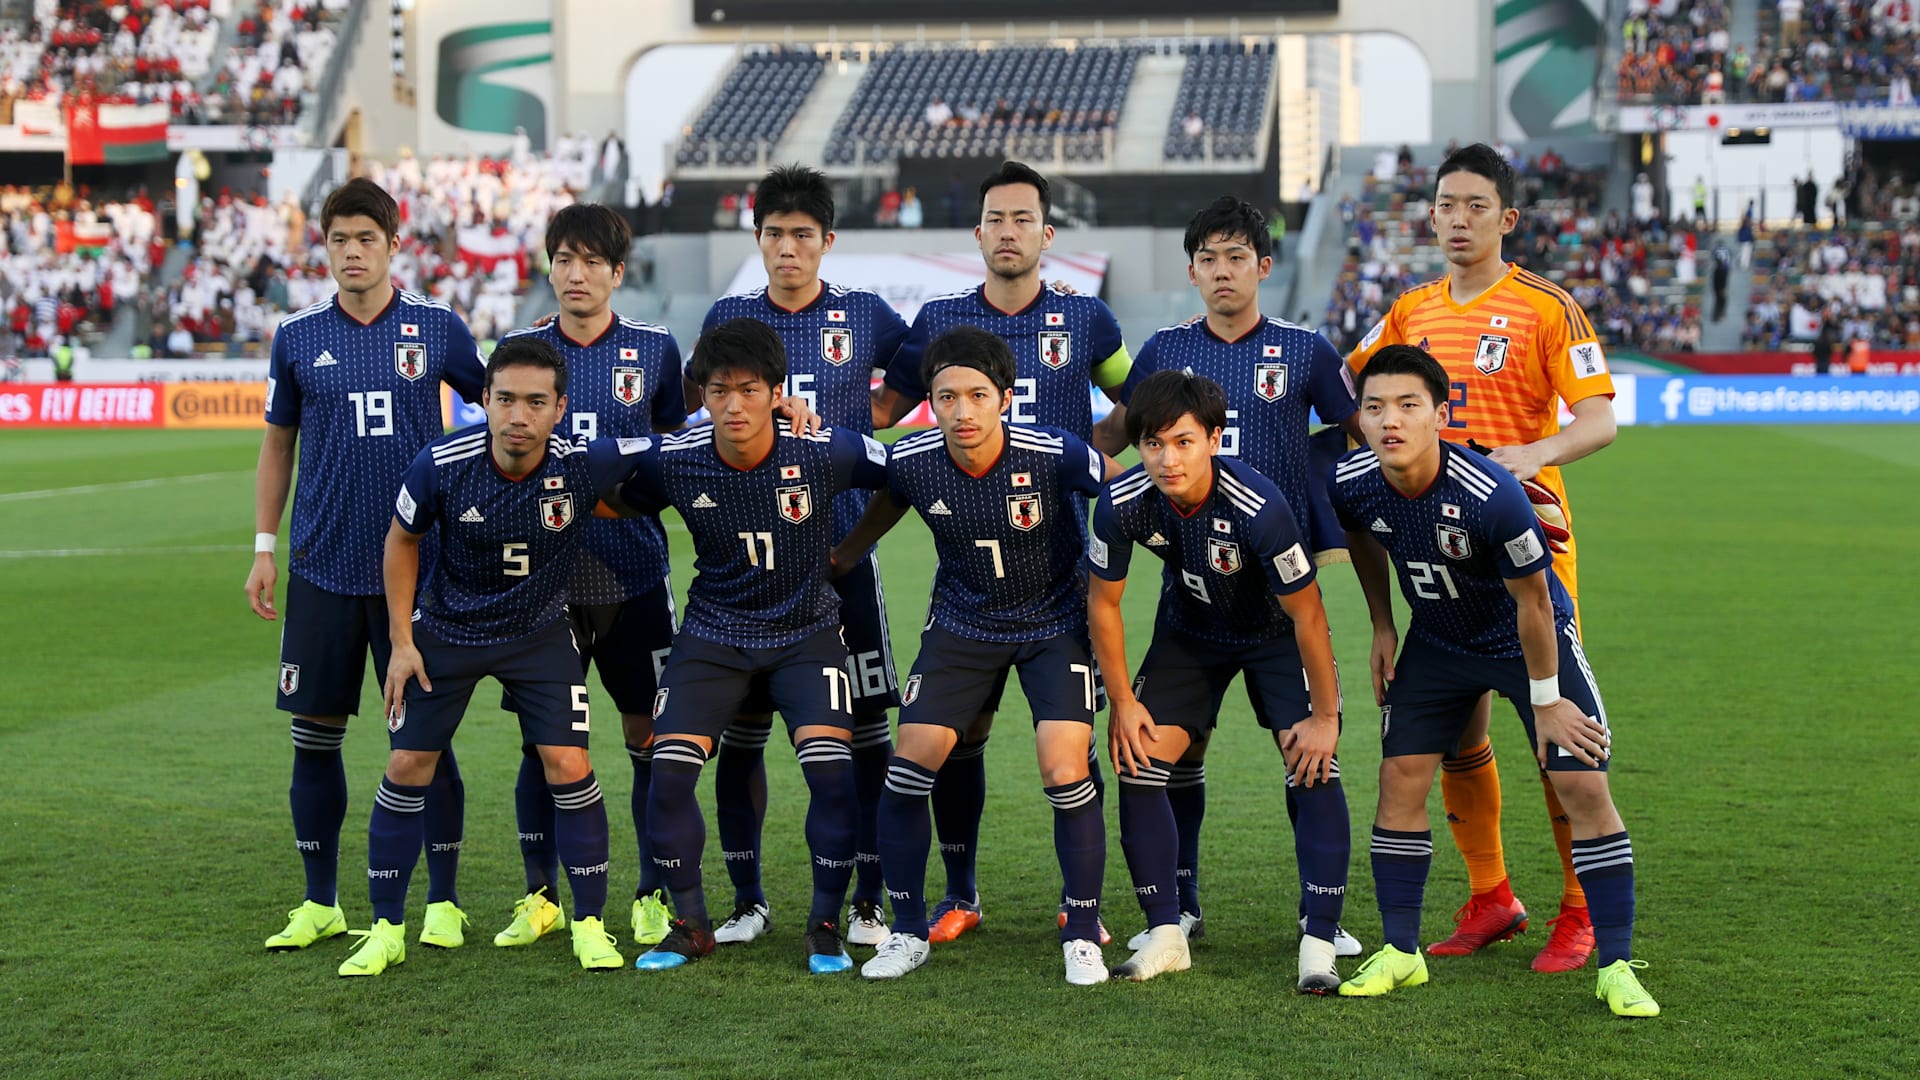 Afcアジアカップ19 勝ち上がりを決めた日本は第3節でウズベキスタンと激突 スタメンの大幅入れ替えも